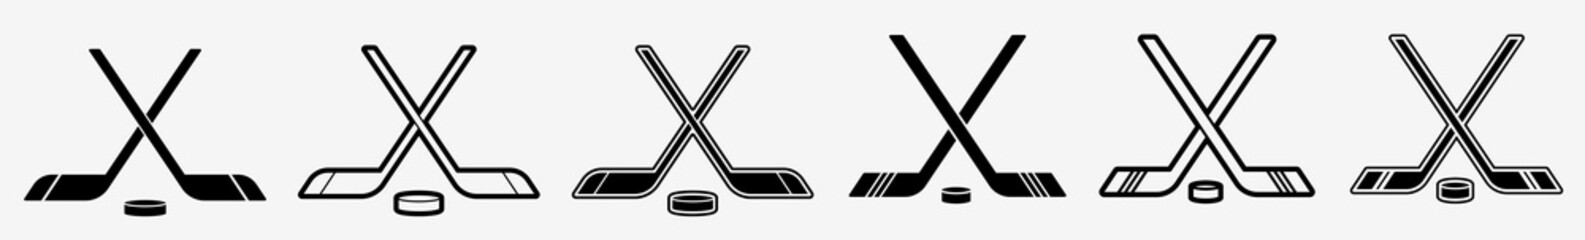 Ice Hockey | Hockey | Emblem | Logo | Variations